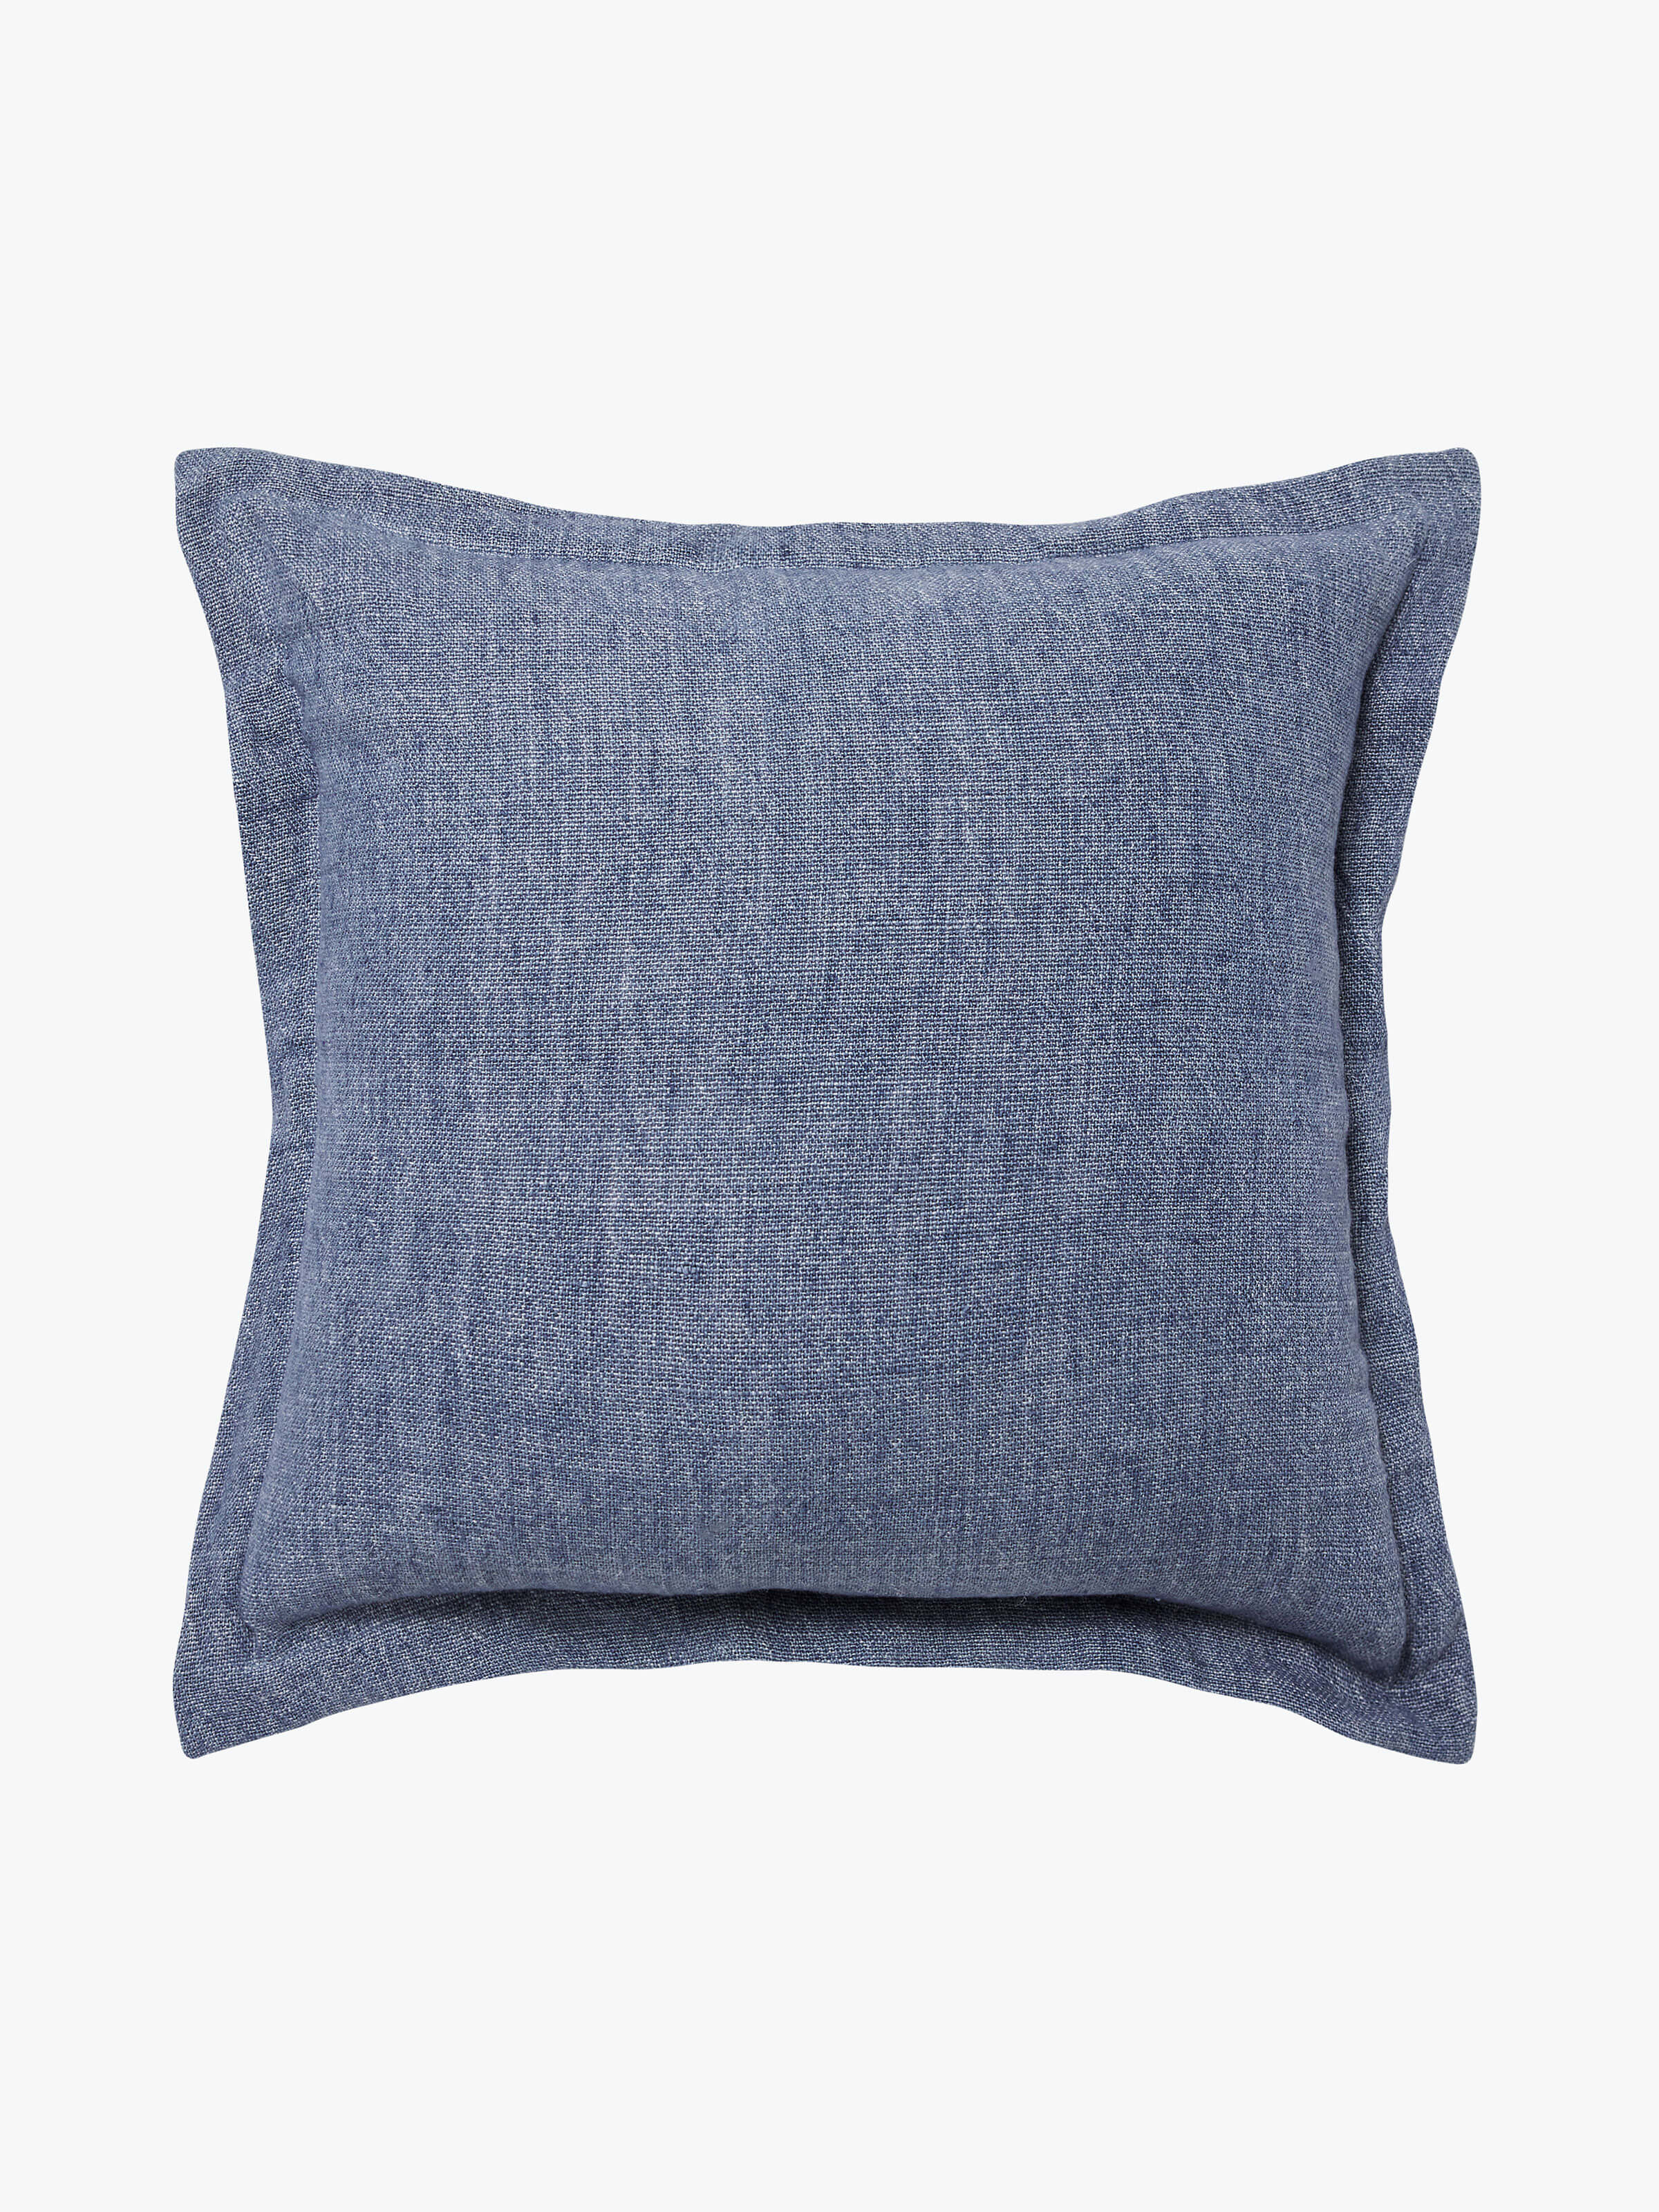 Burton Vintage Blue Tailored Heavy Linen Cushion